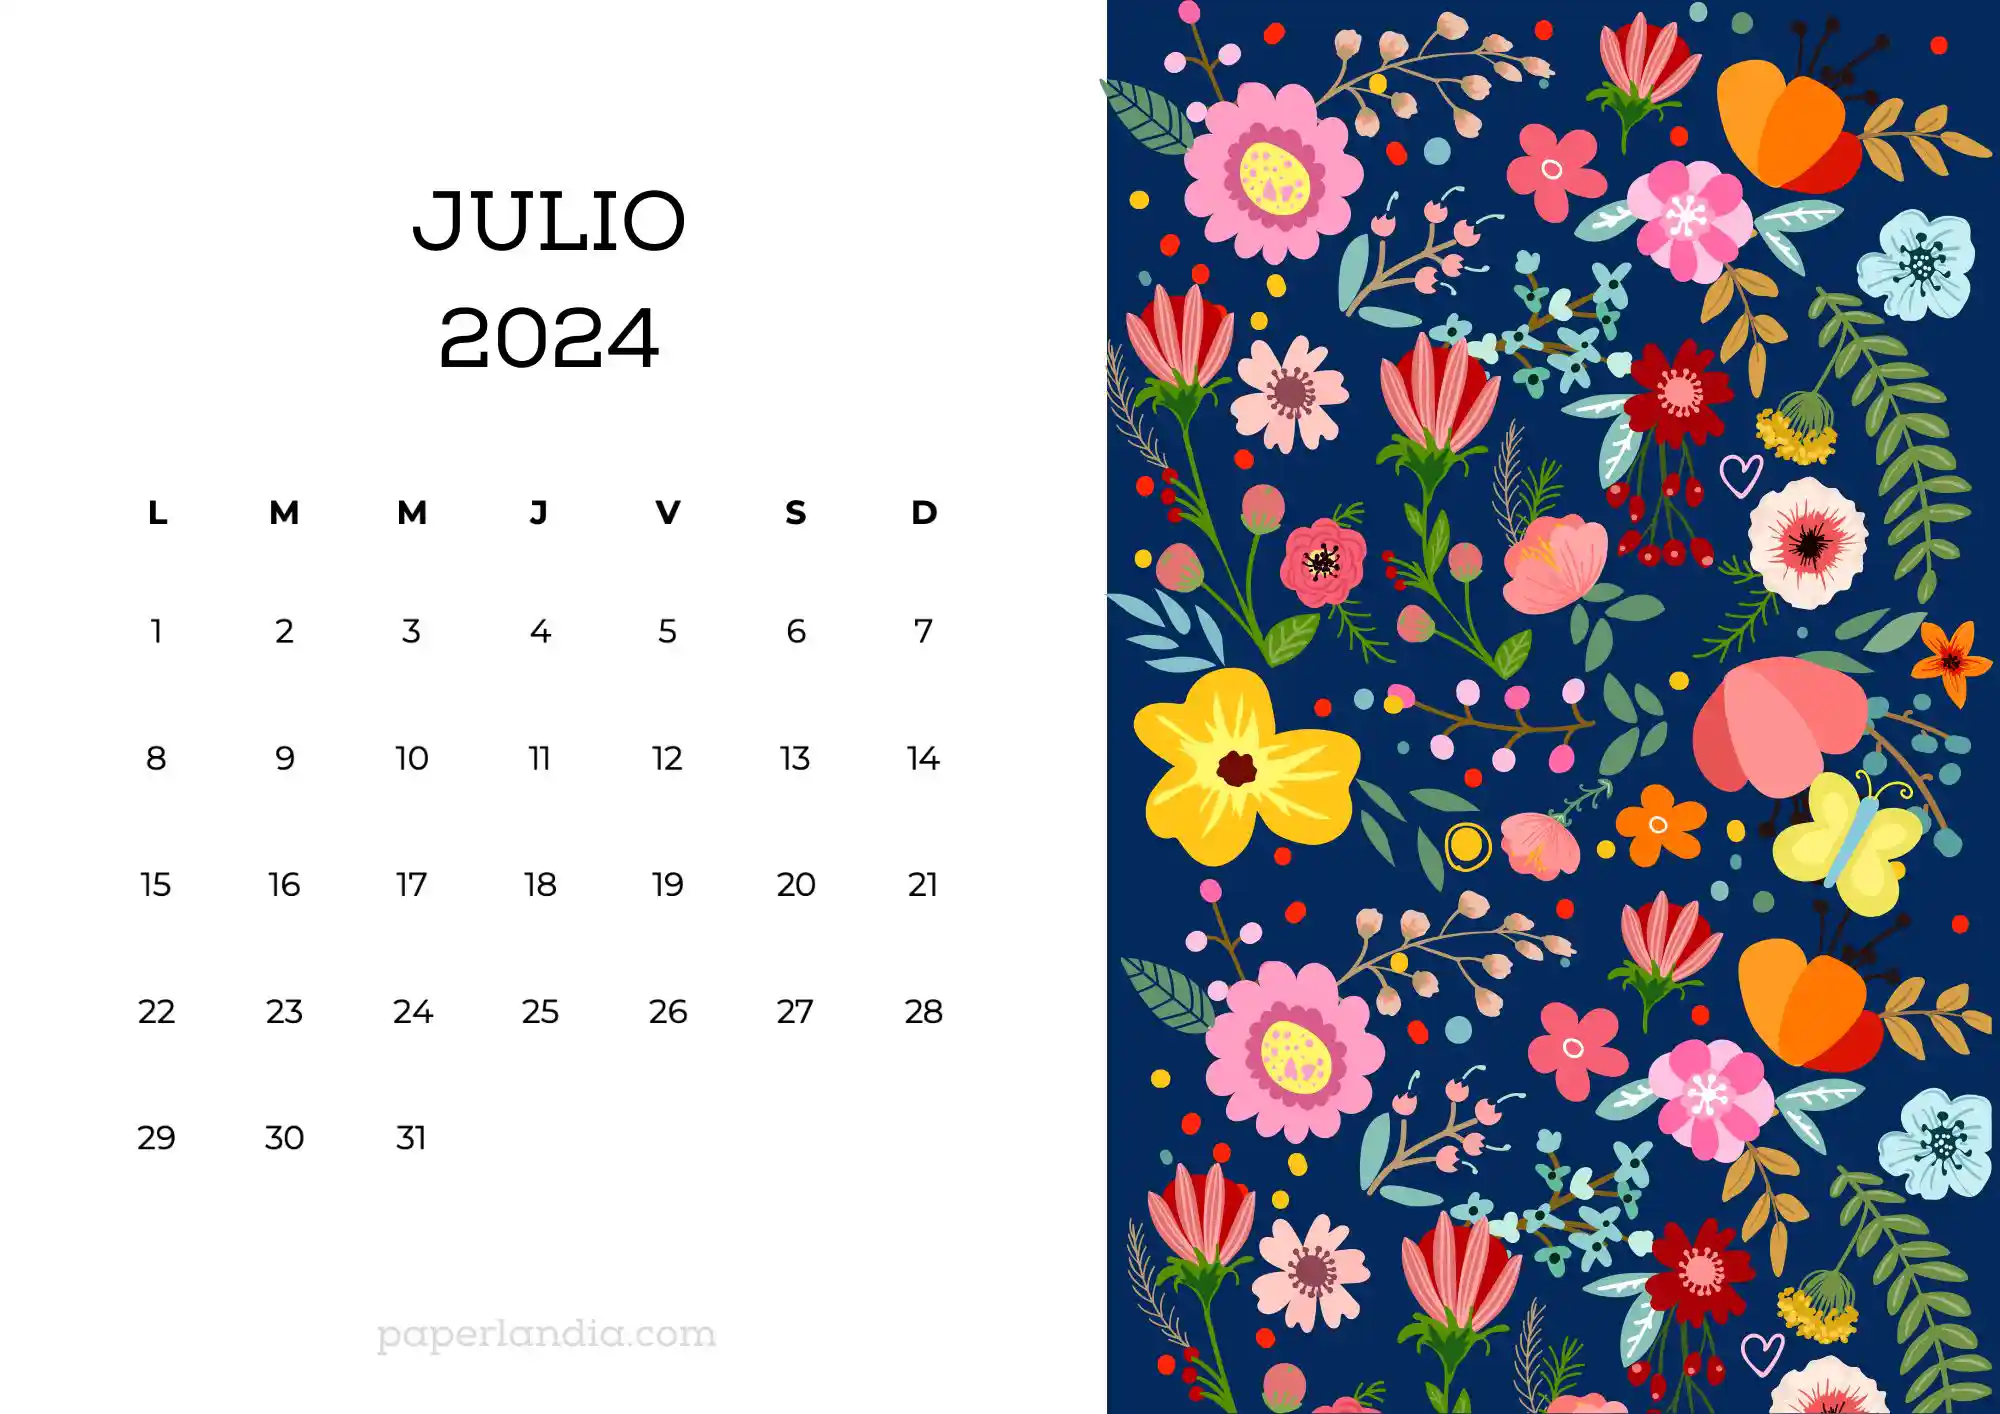 Calendario julio 2024 horizontal con flores escandinavas fondo azul